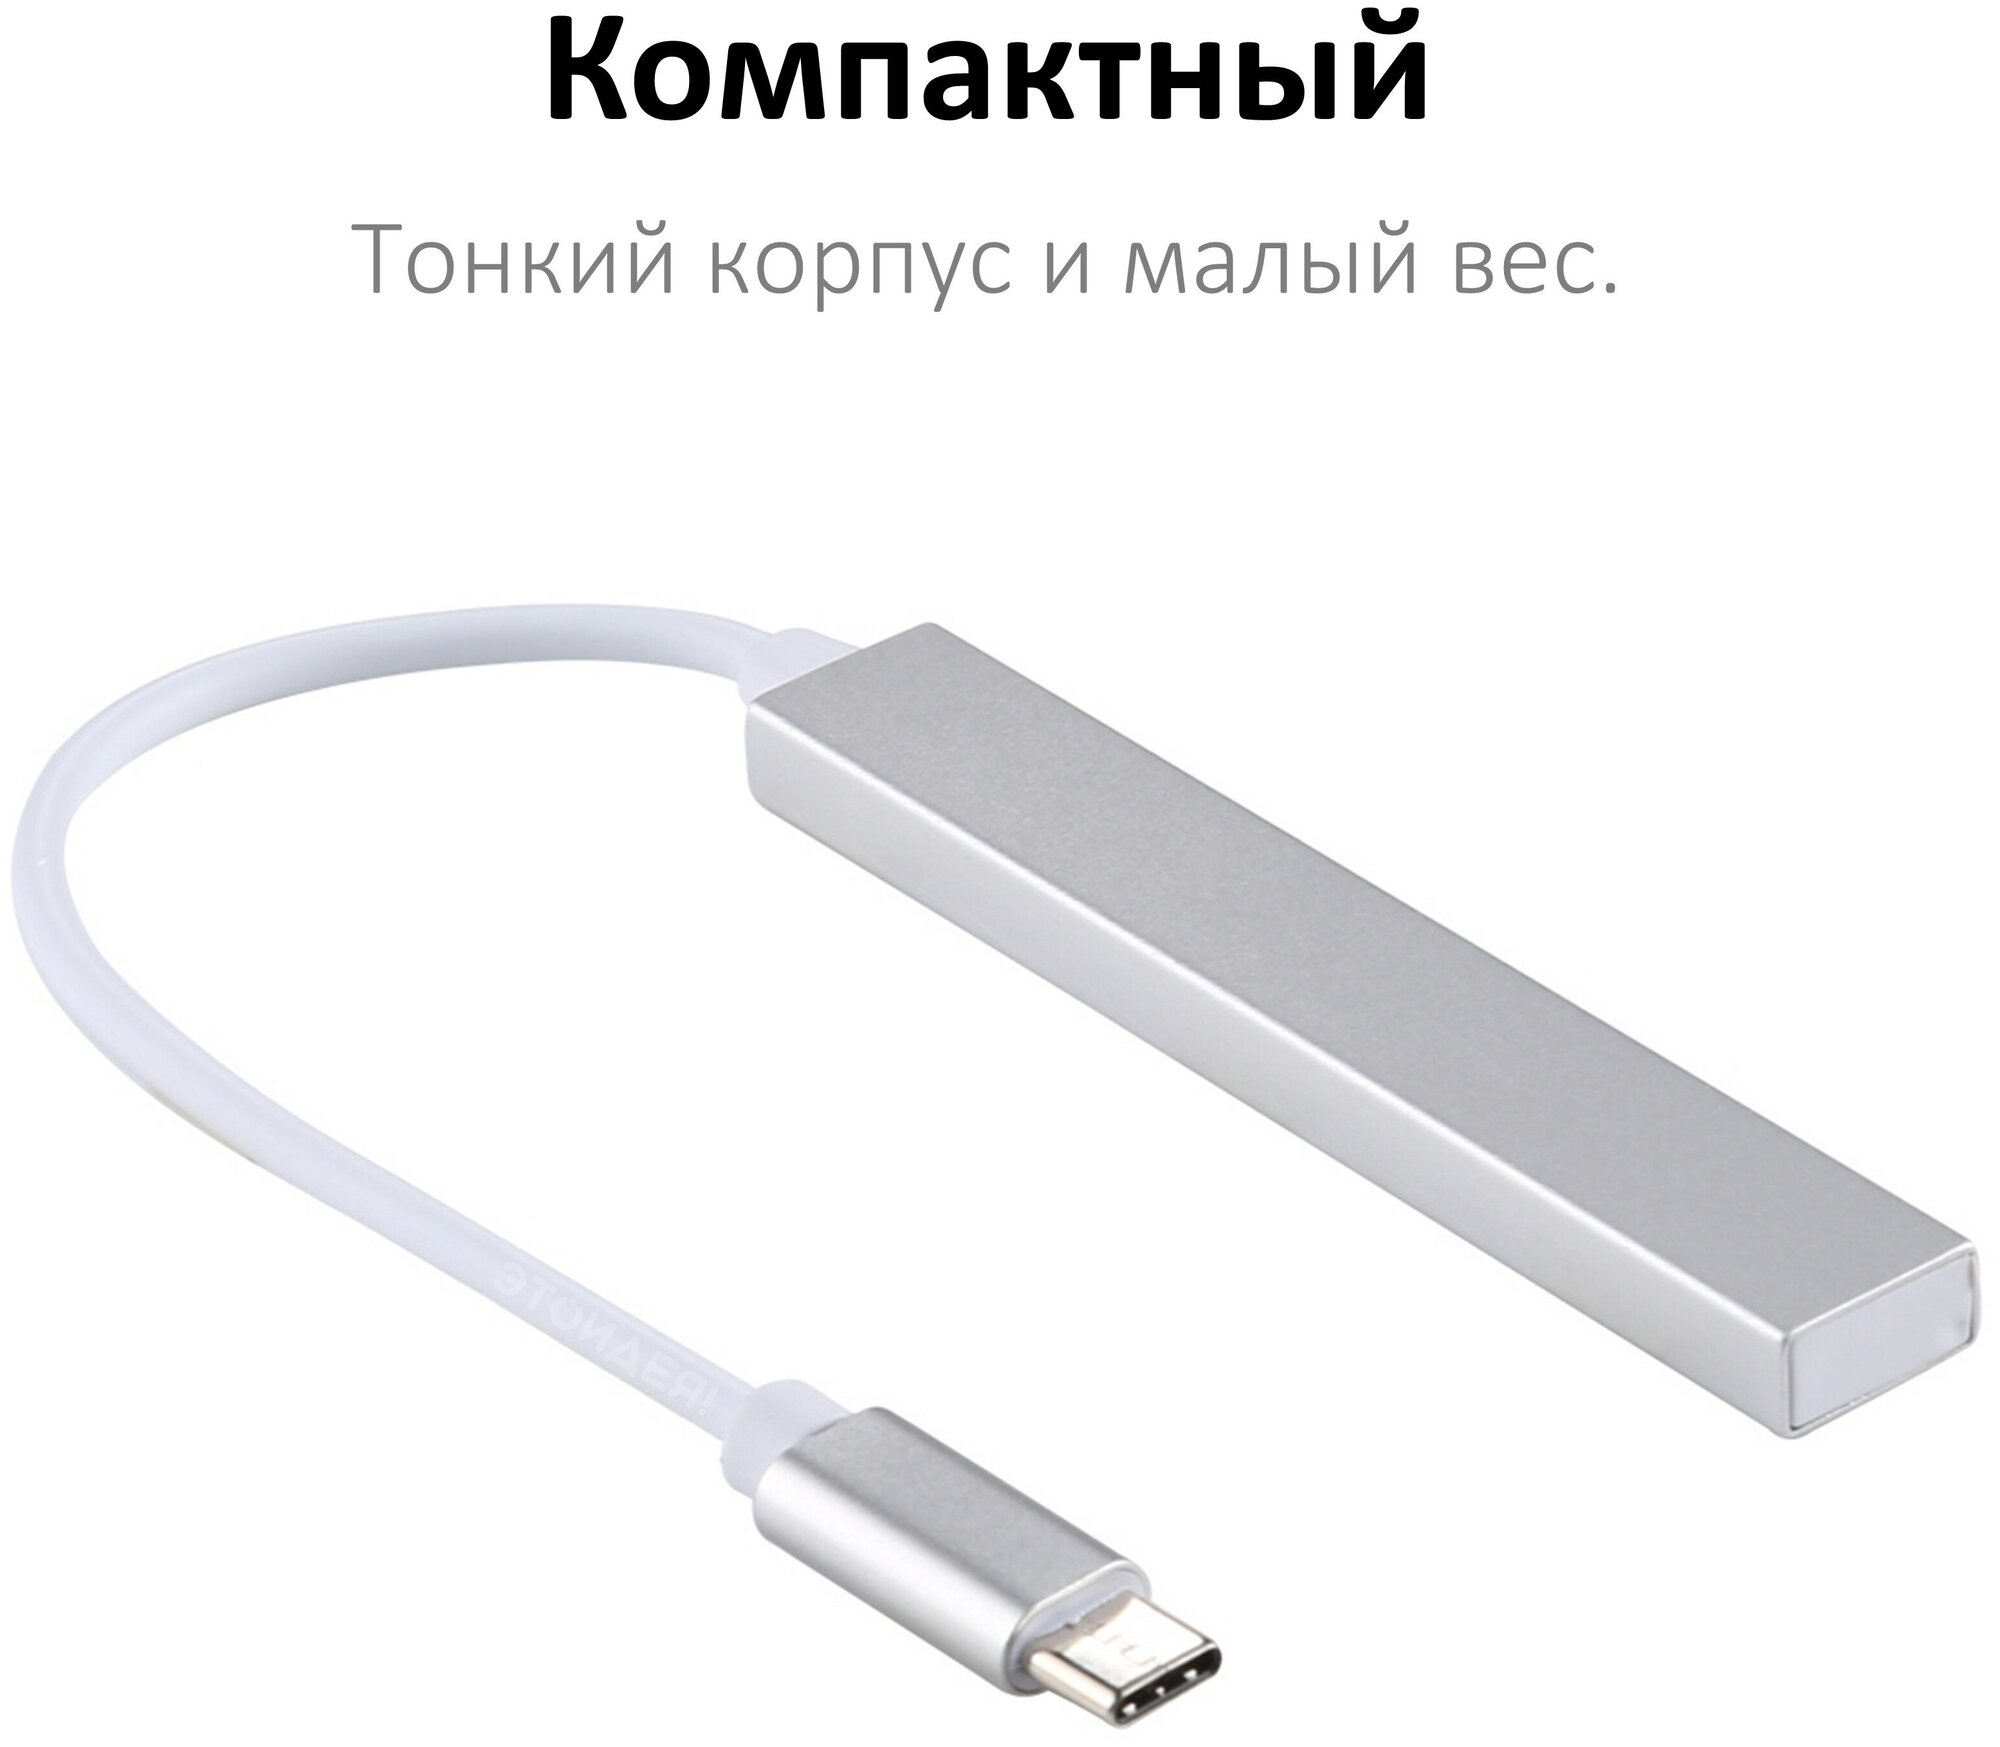 Хаб с кабелем Type-C на 3 порта USB 2.0 с кардридером для карт памяти microSD, алюминиевый, серебристый / для MacBook, ноутбука, компьютера / NOBUS